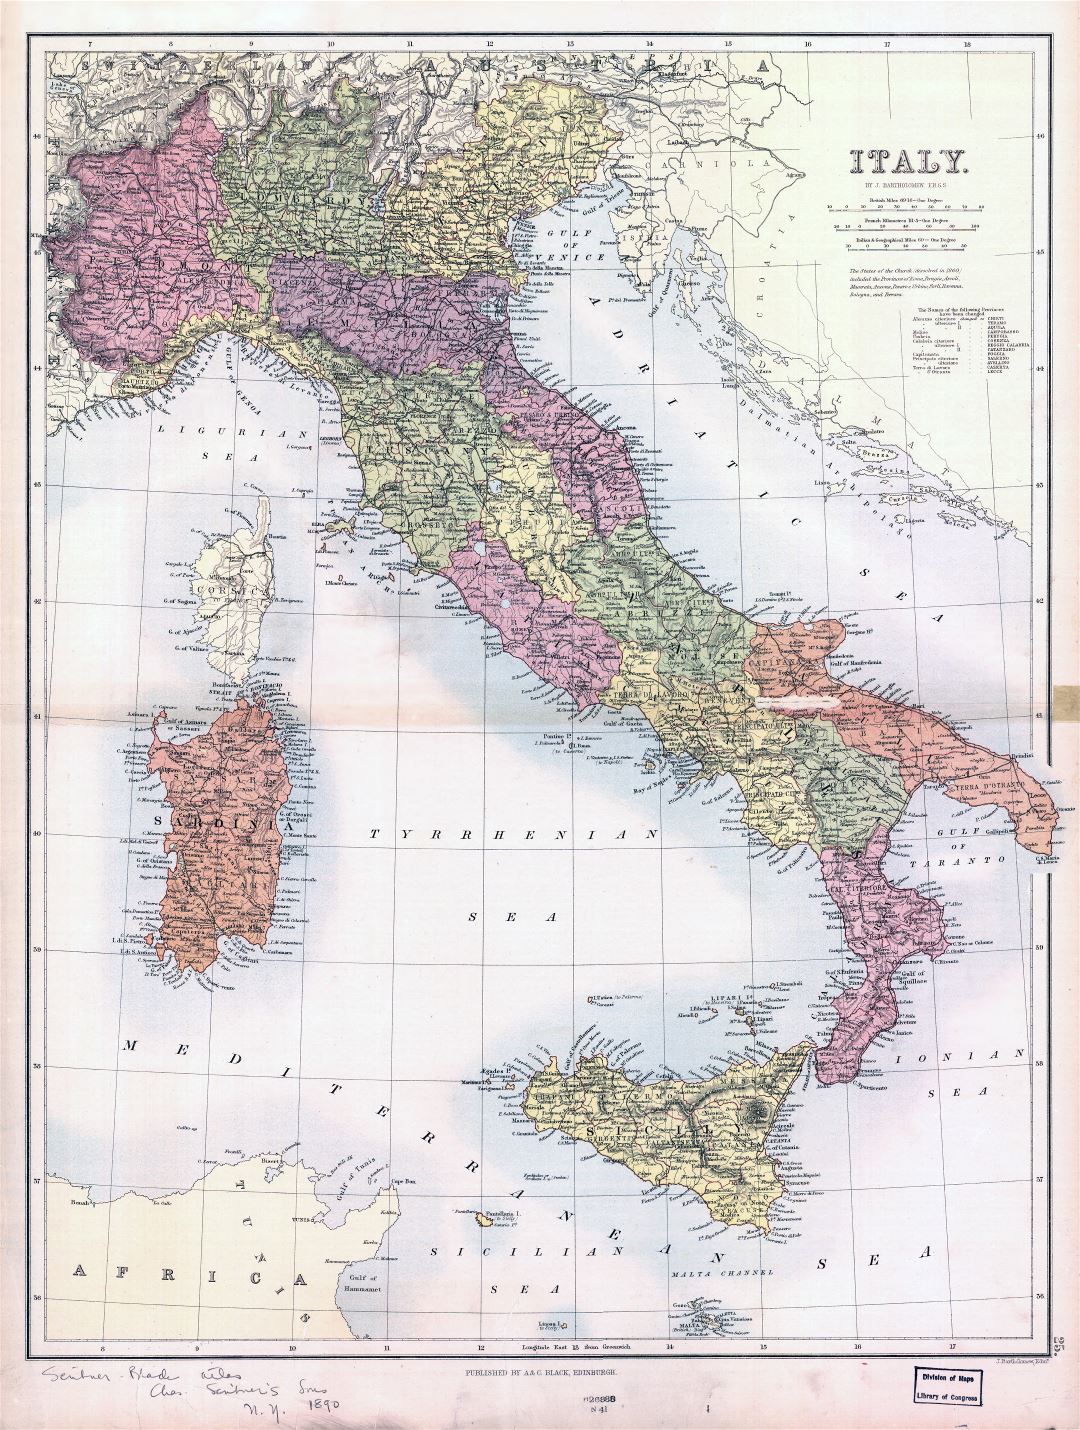 Grande de la escala mapa político y administrativo de la antigua Italia - 1890